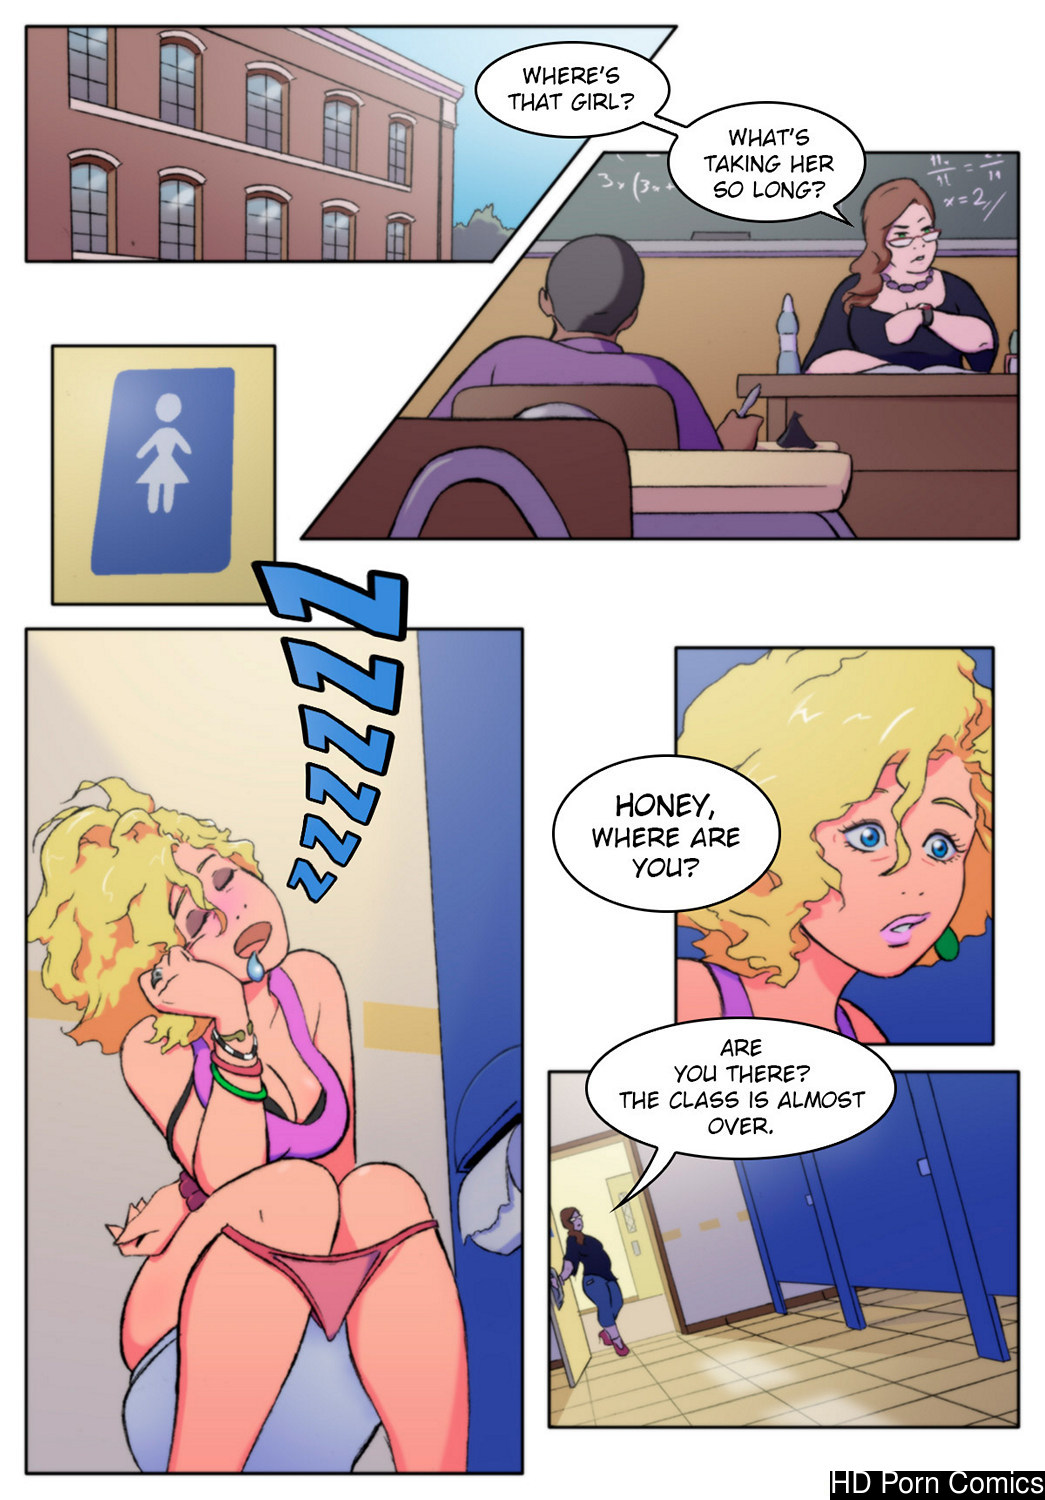 Girls Bathroom comic porn | HD Porn Comics